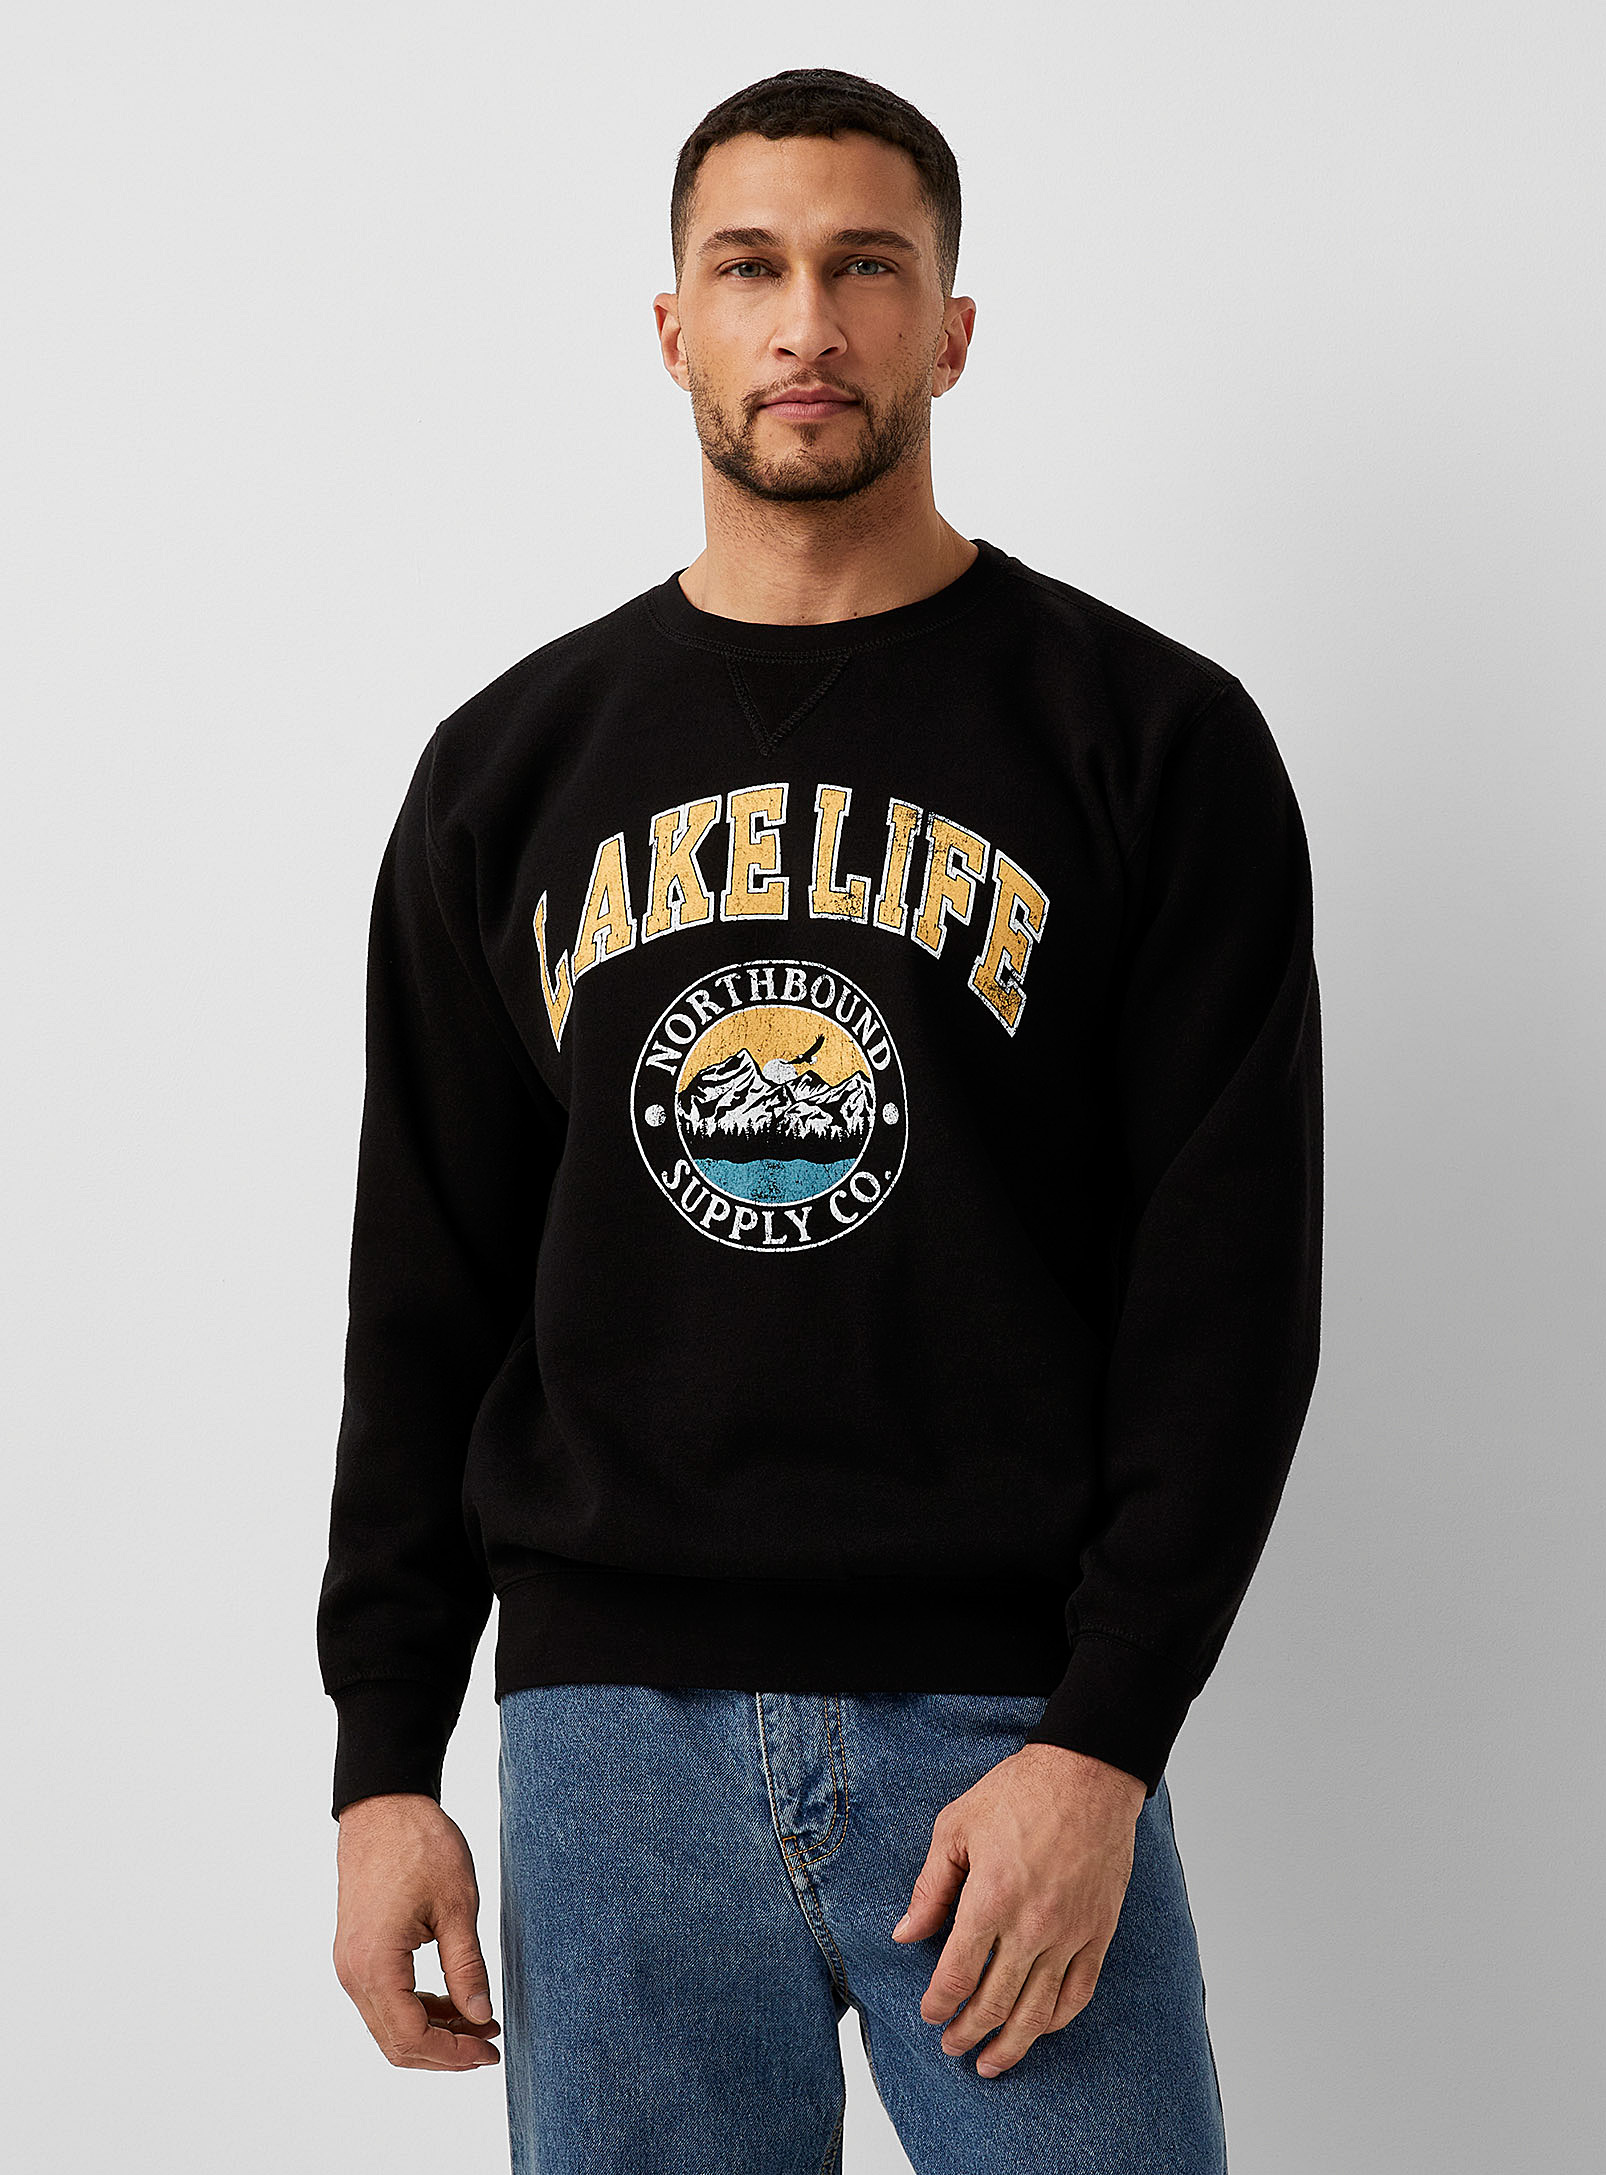 Northbound - Men's Lake Life sweatshirt